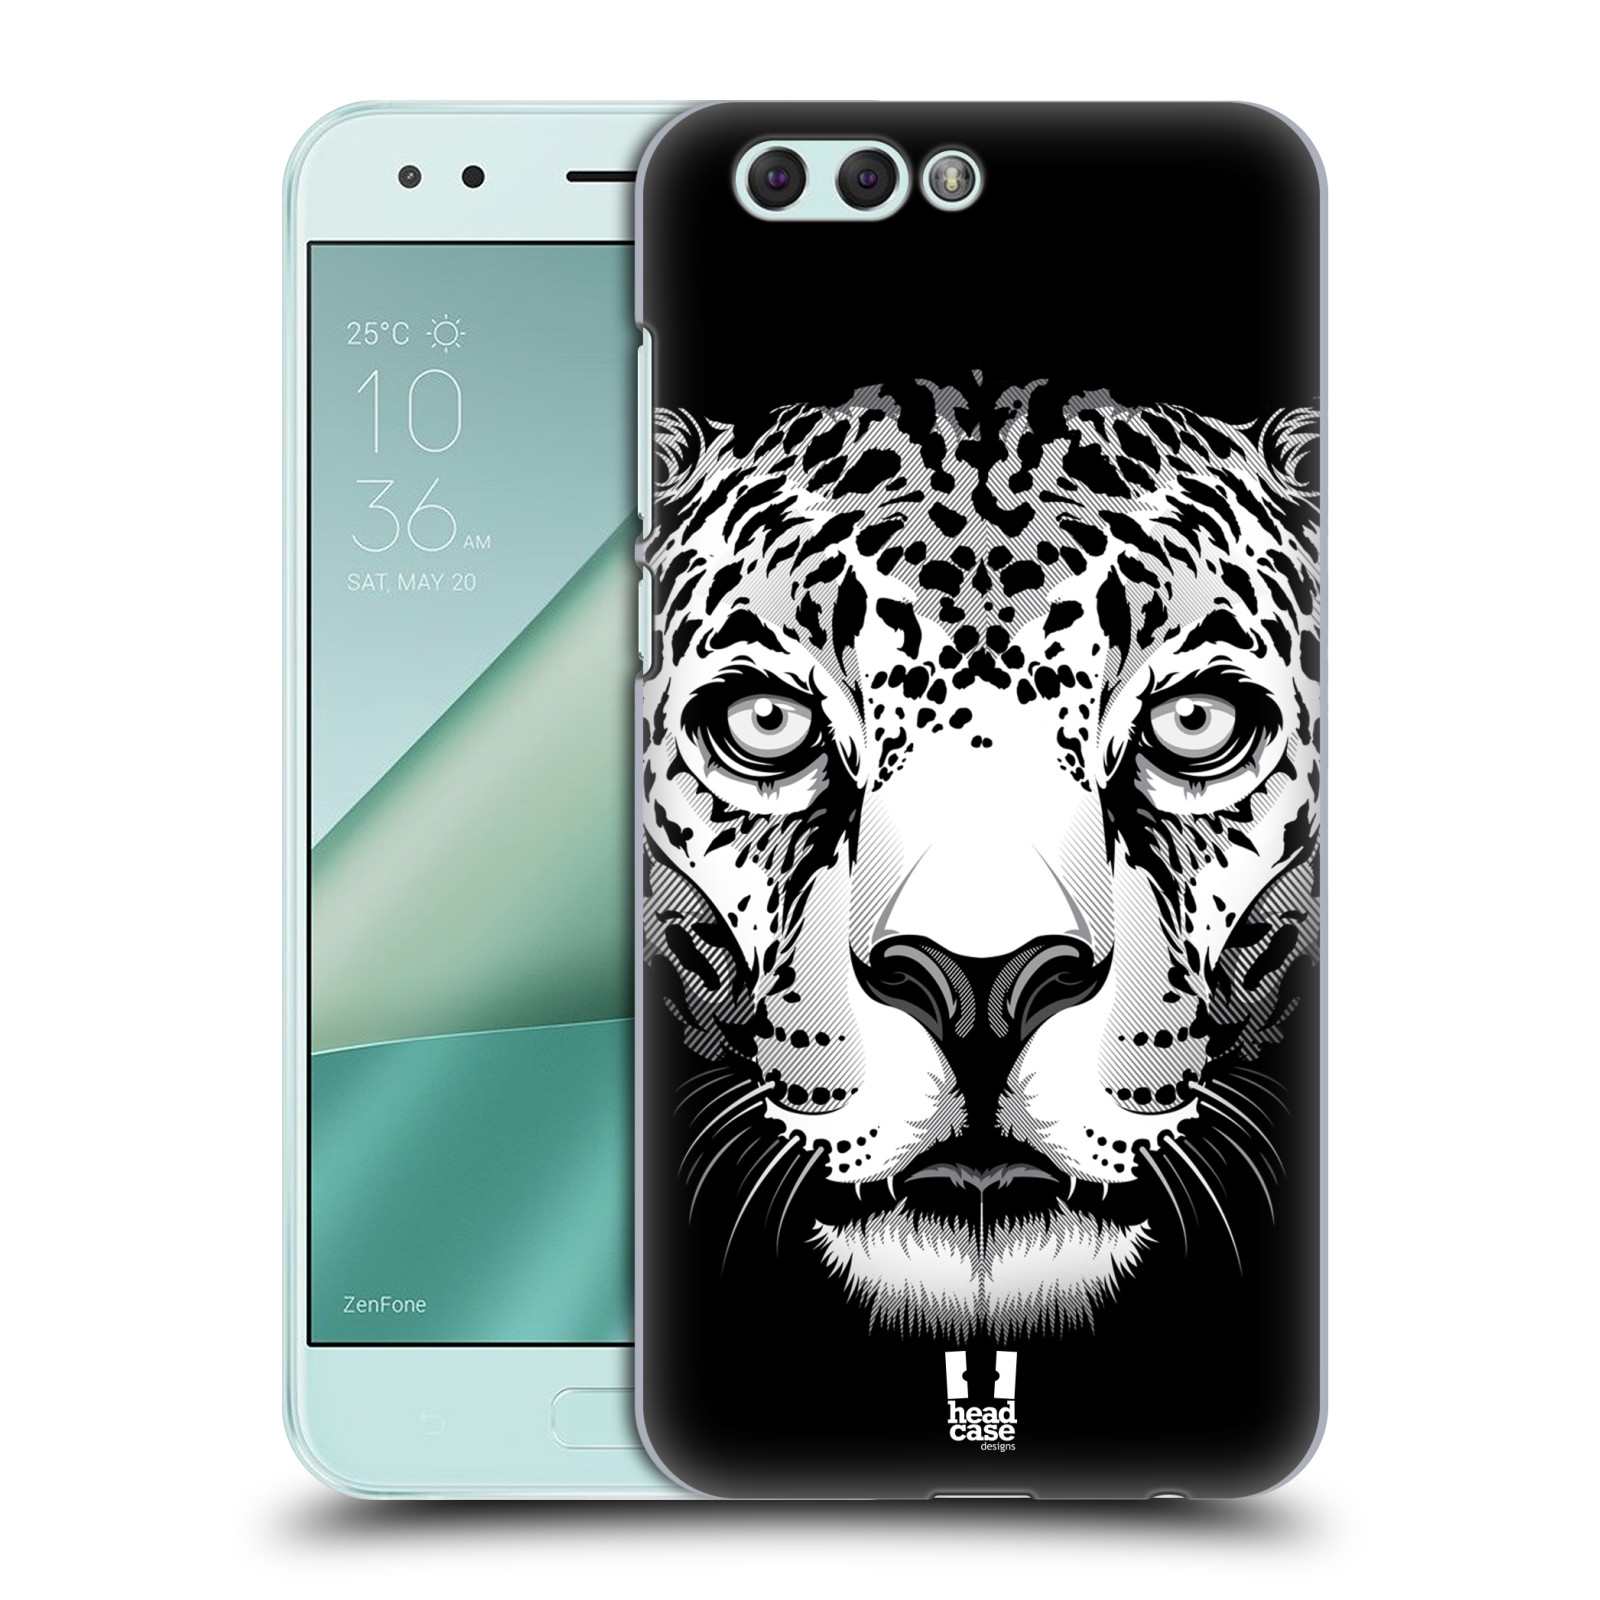 HEAD CASE plastový obal na mobil Asus Zenfone 4 ZE554KL vzor Zvíře kreslená tvář leopard